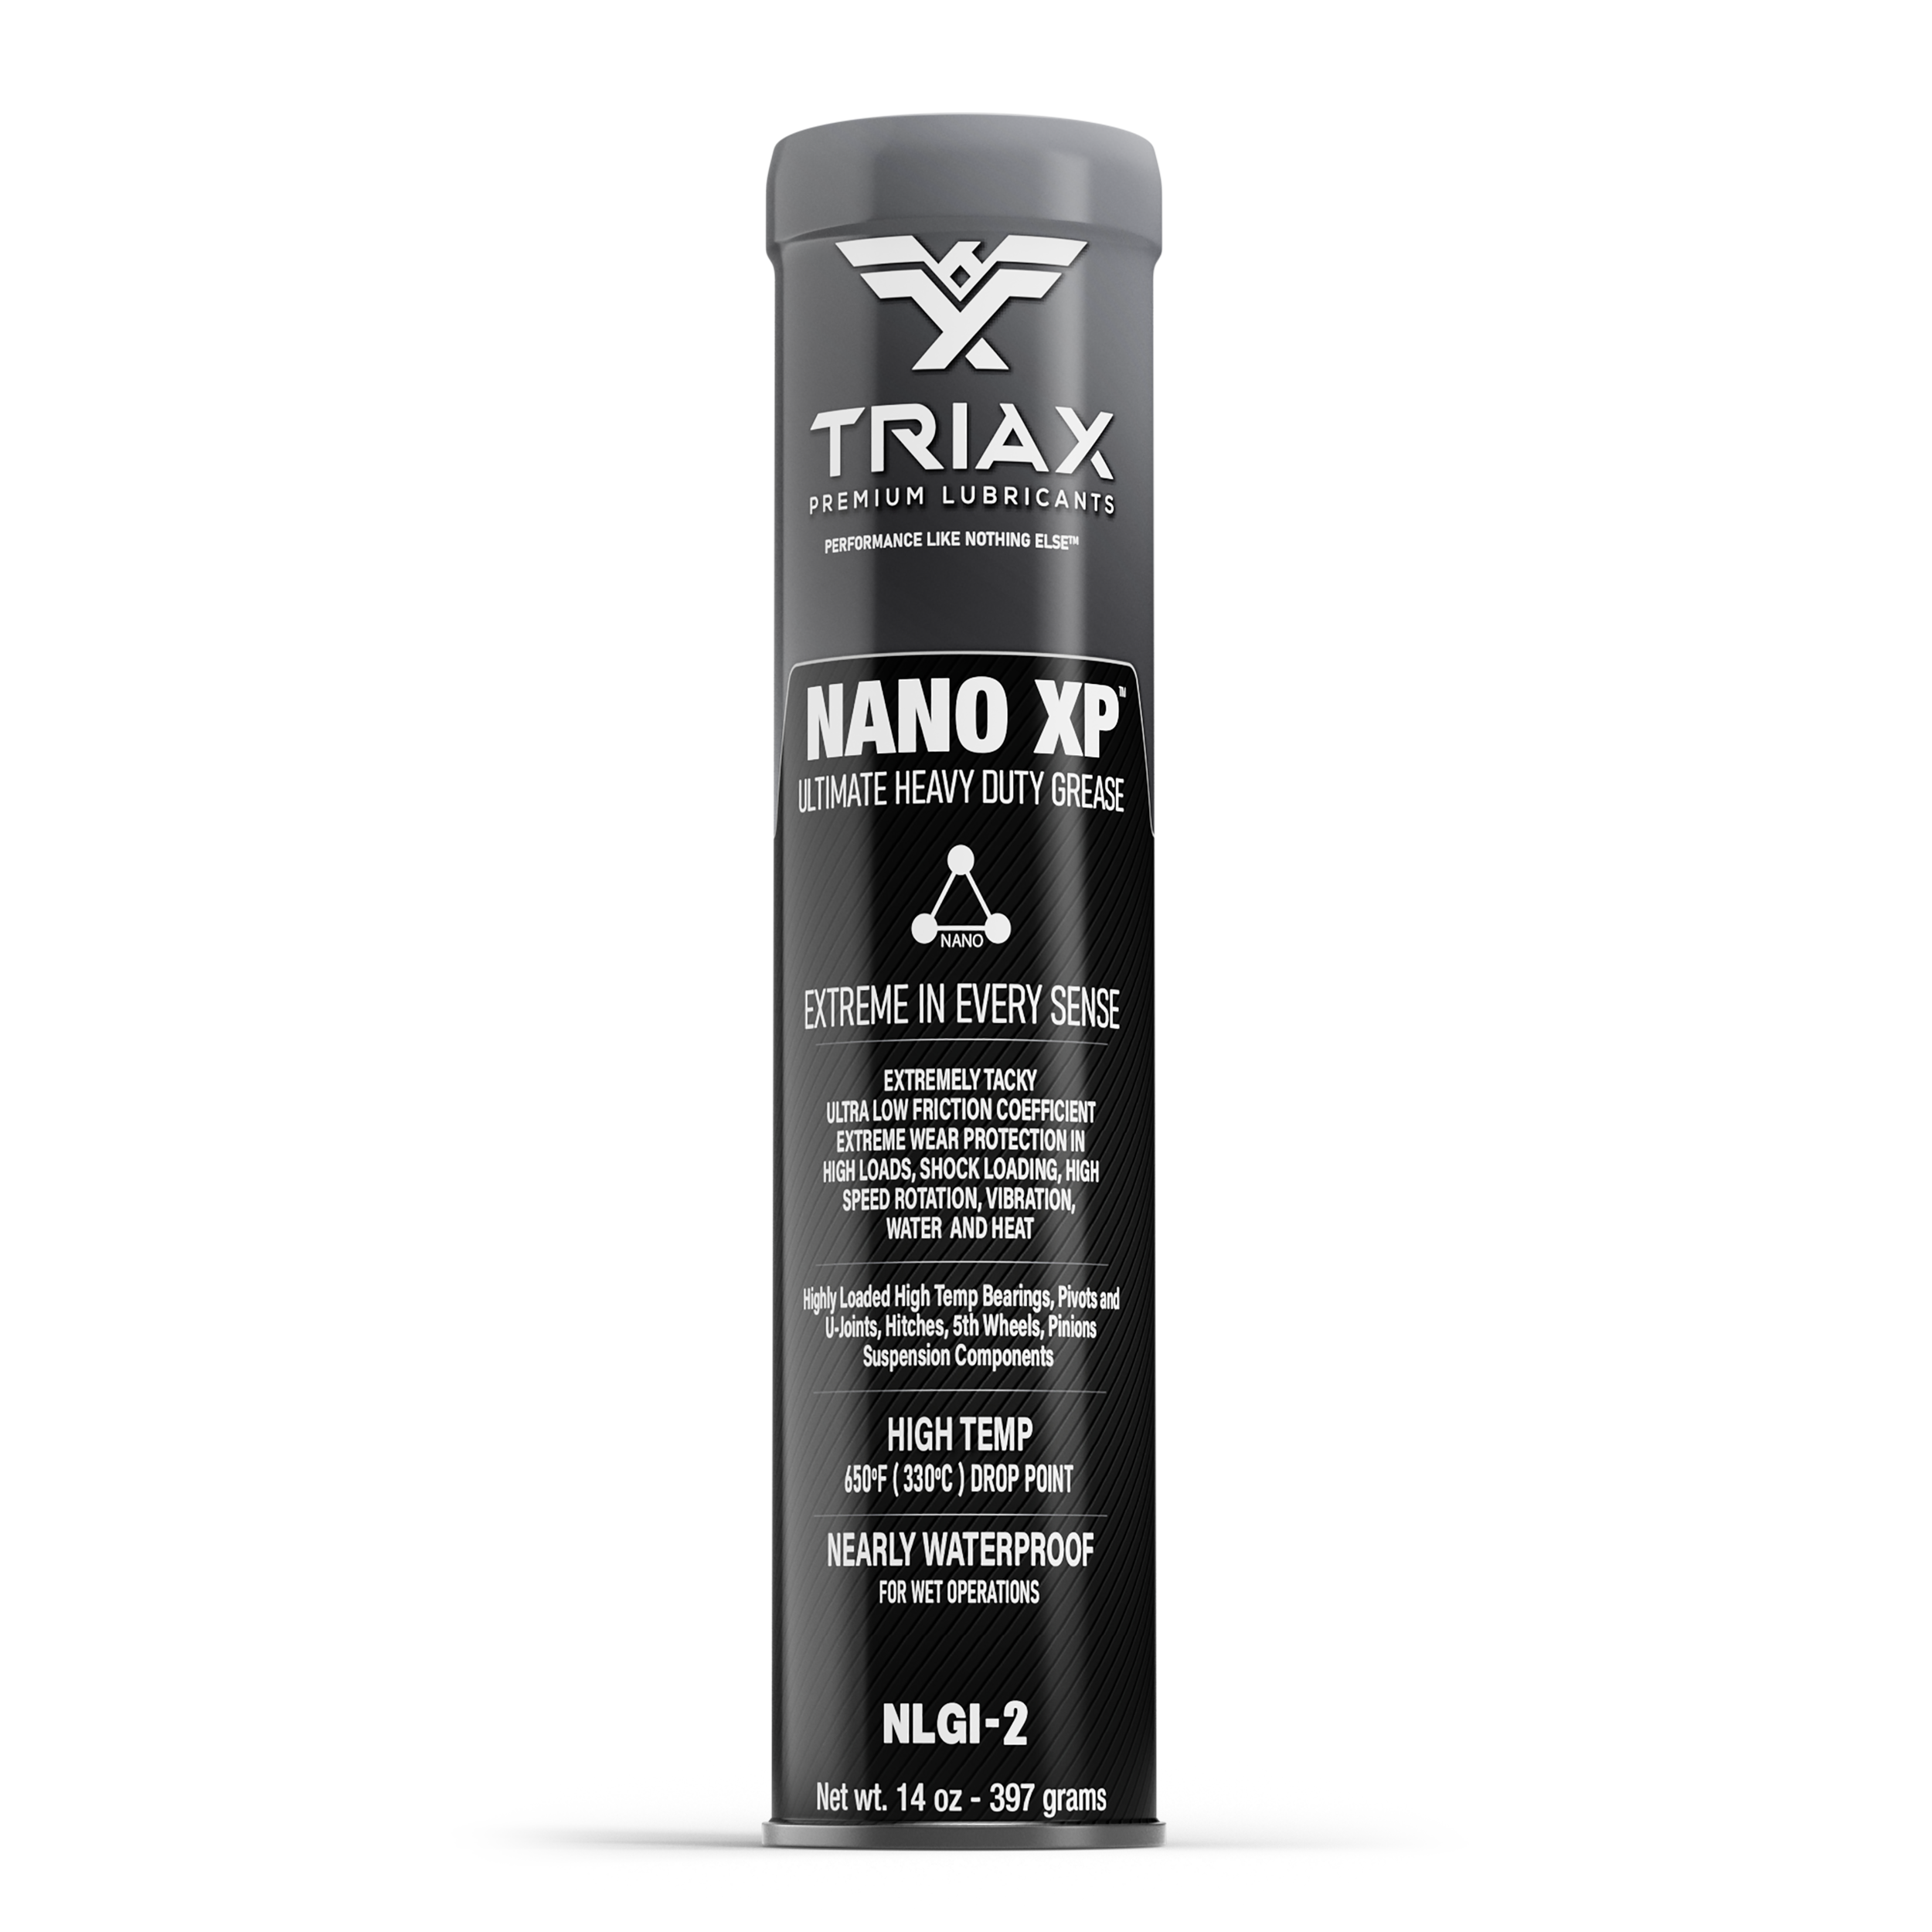 TRIAX NANO XP Vaselina Heavy Duty